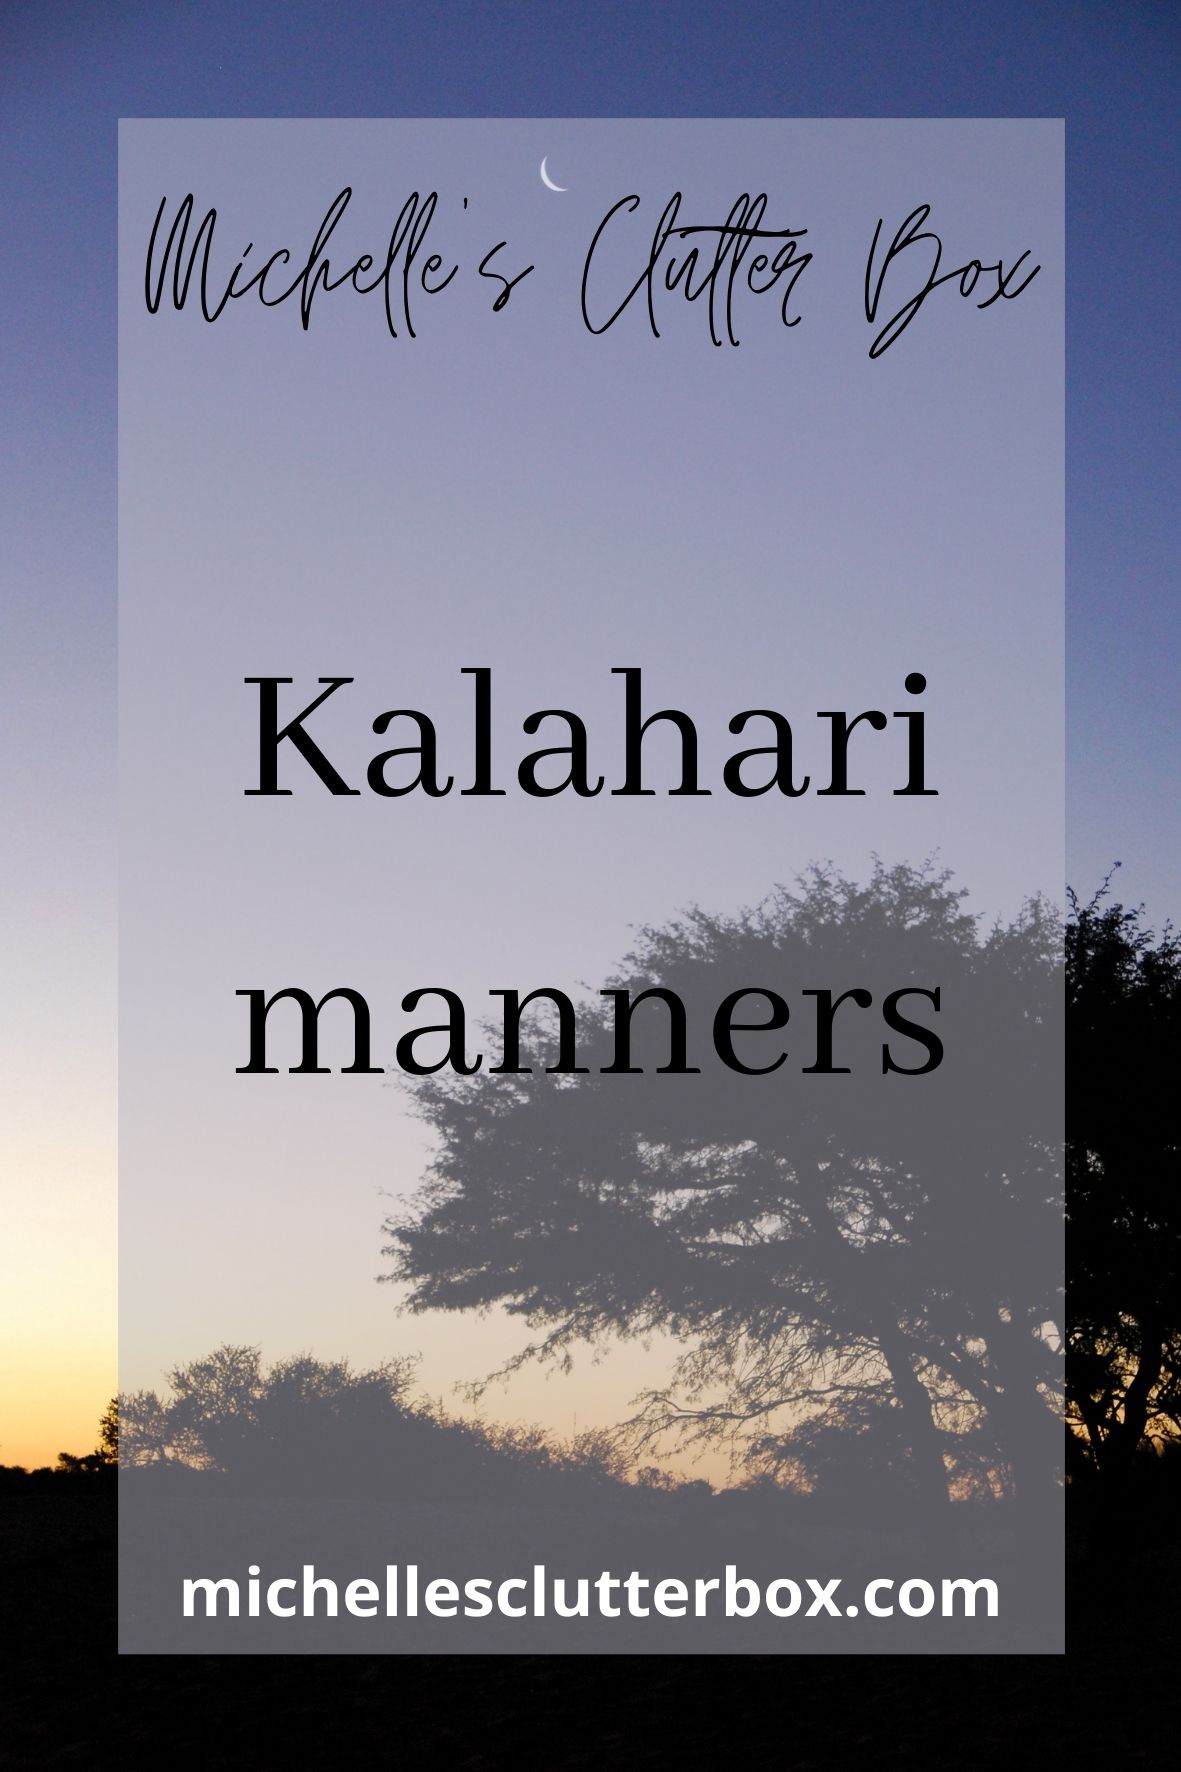 Kalahari manners